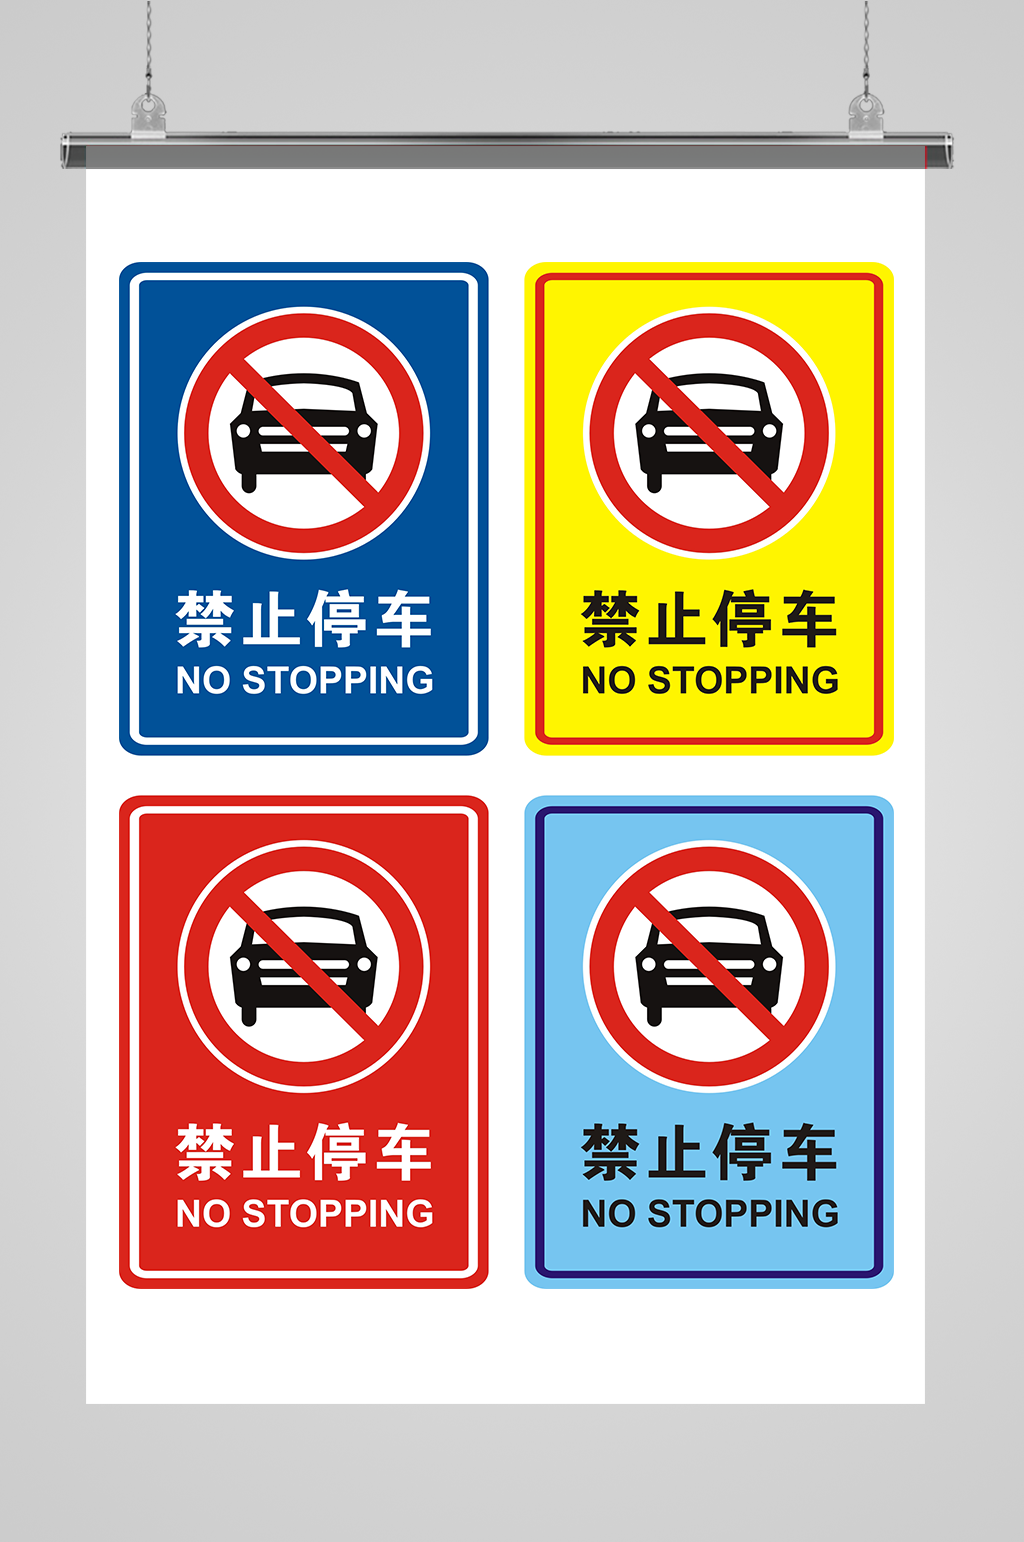 前方200米禁止停车标志图片